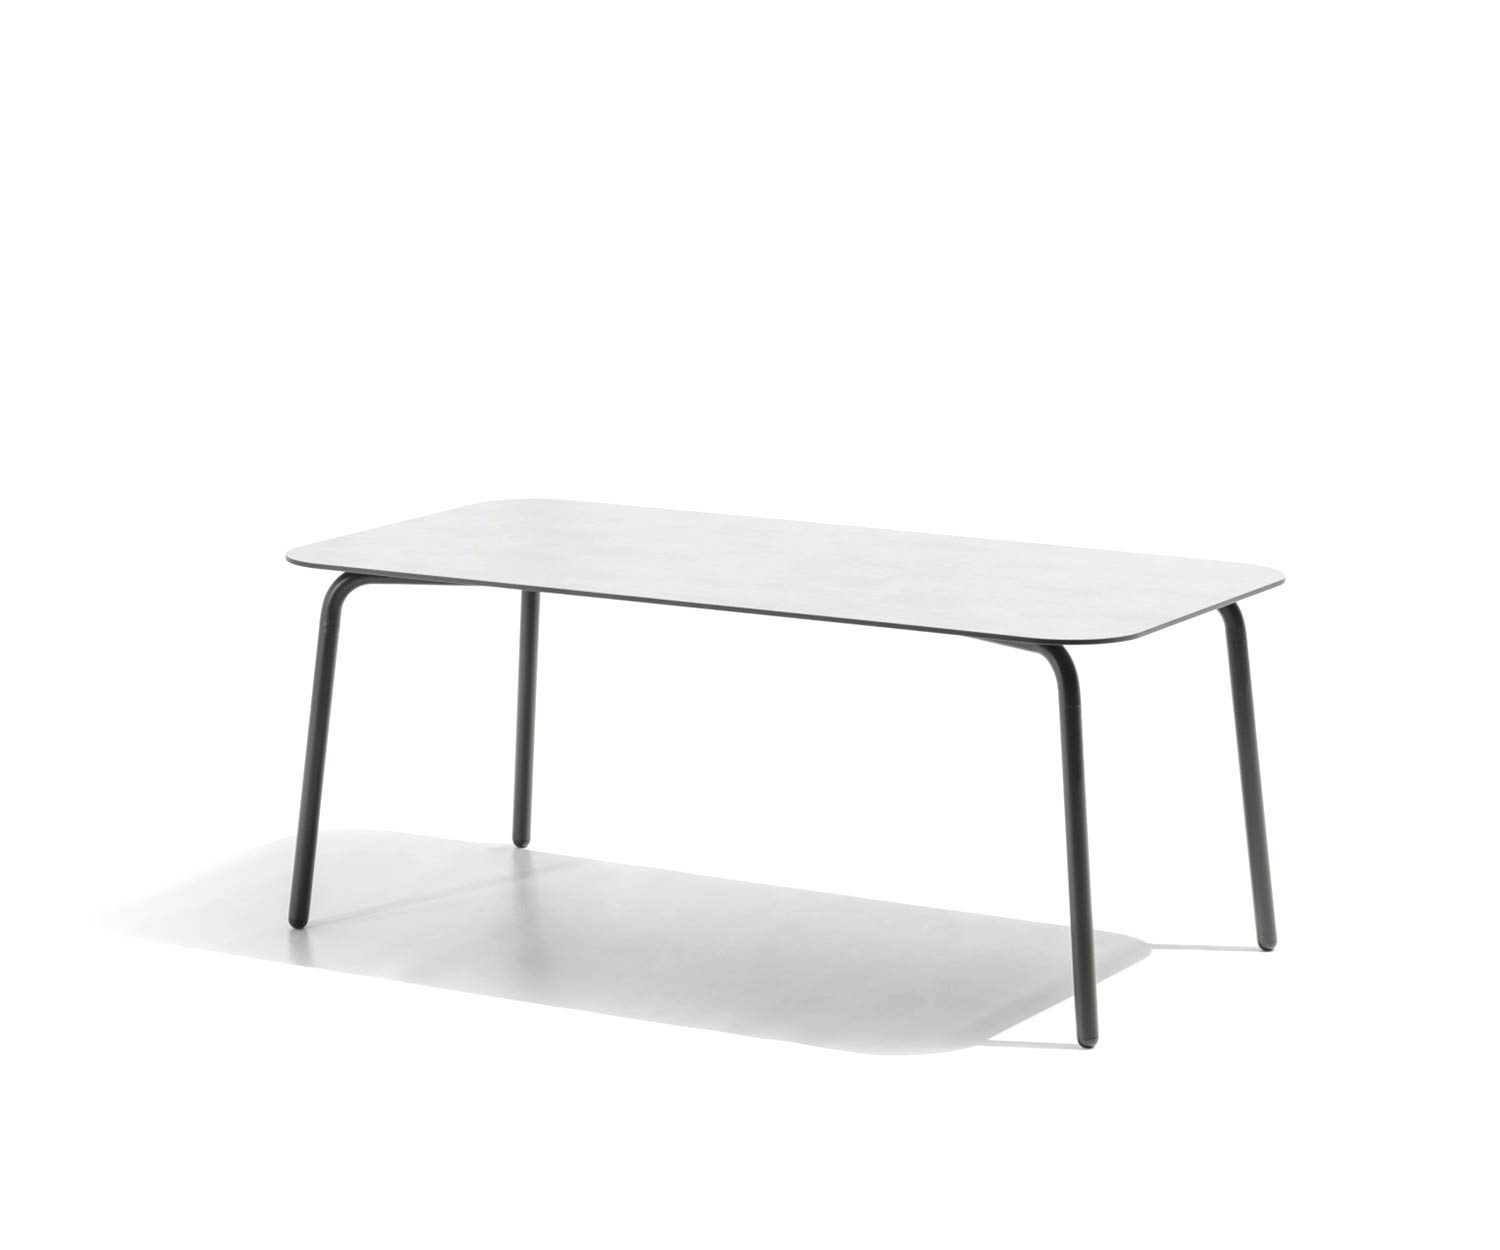 Esclusivo tavolo da giardino di design Todus Condor con struttura in acciaio inox verniciato a polvere